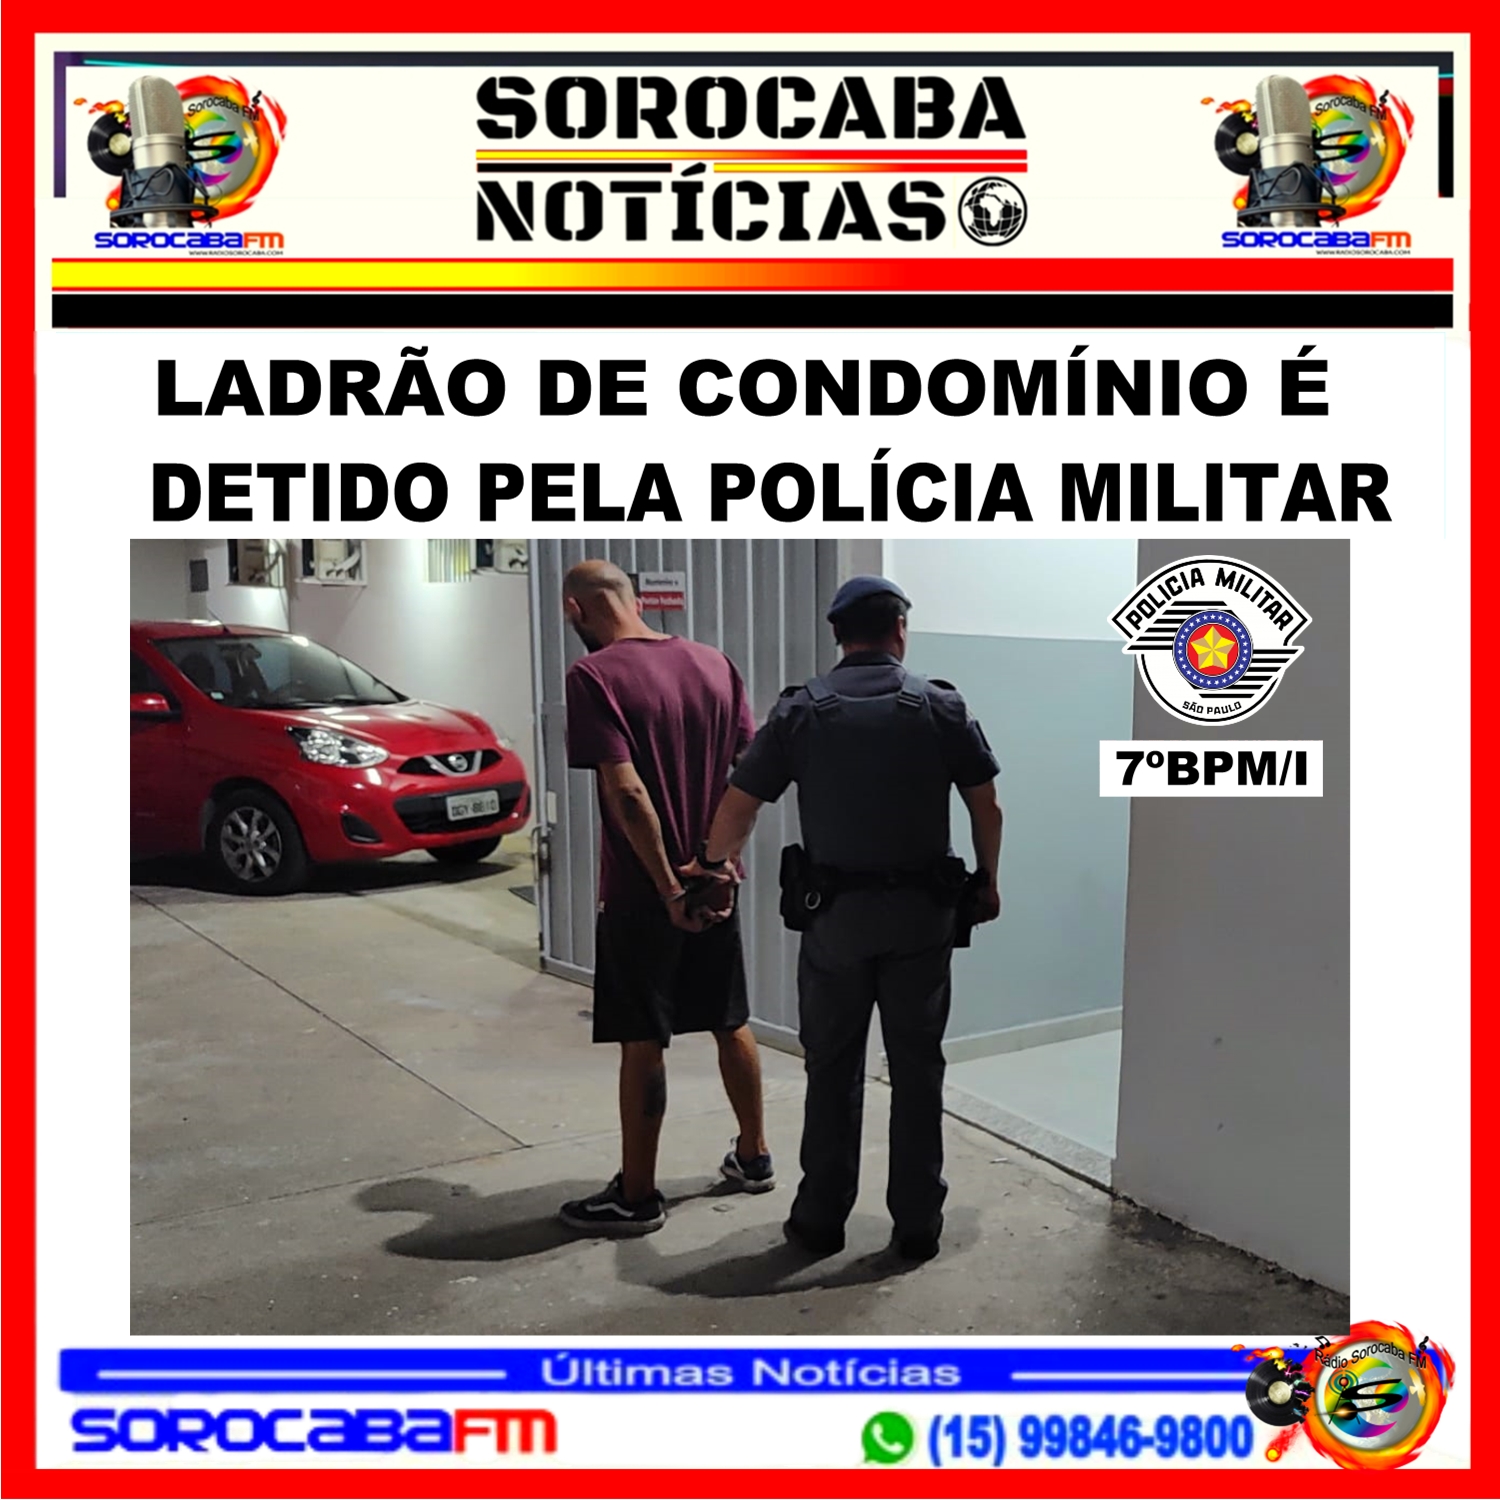 LADRÃO É DETIDO PELA POLÍCIA MILITAR FURTANDO HIDRANTE DE CONDOMÍNIO NA ZONA SUL DE SOROCABA